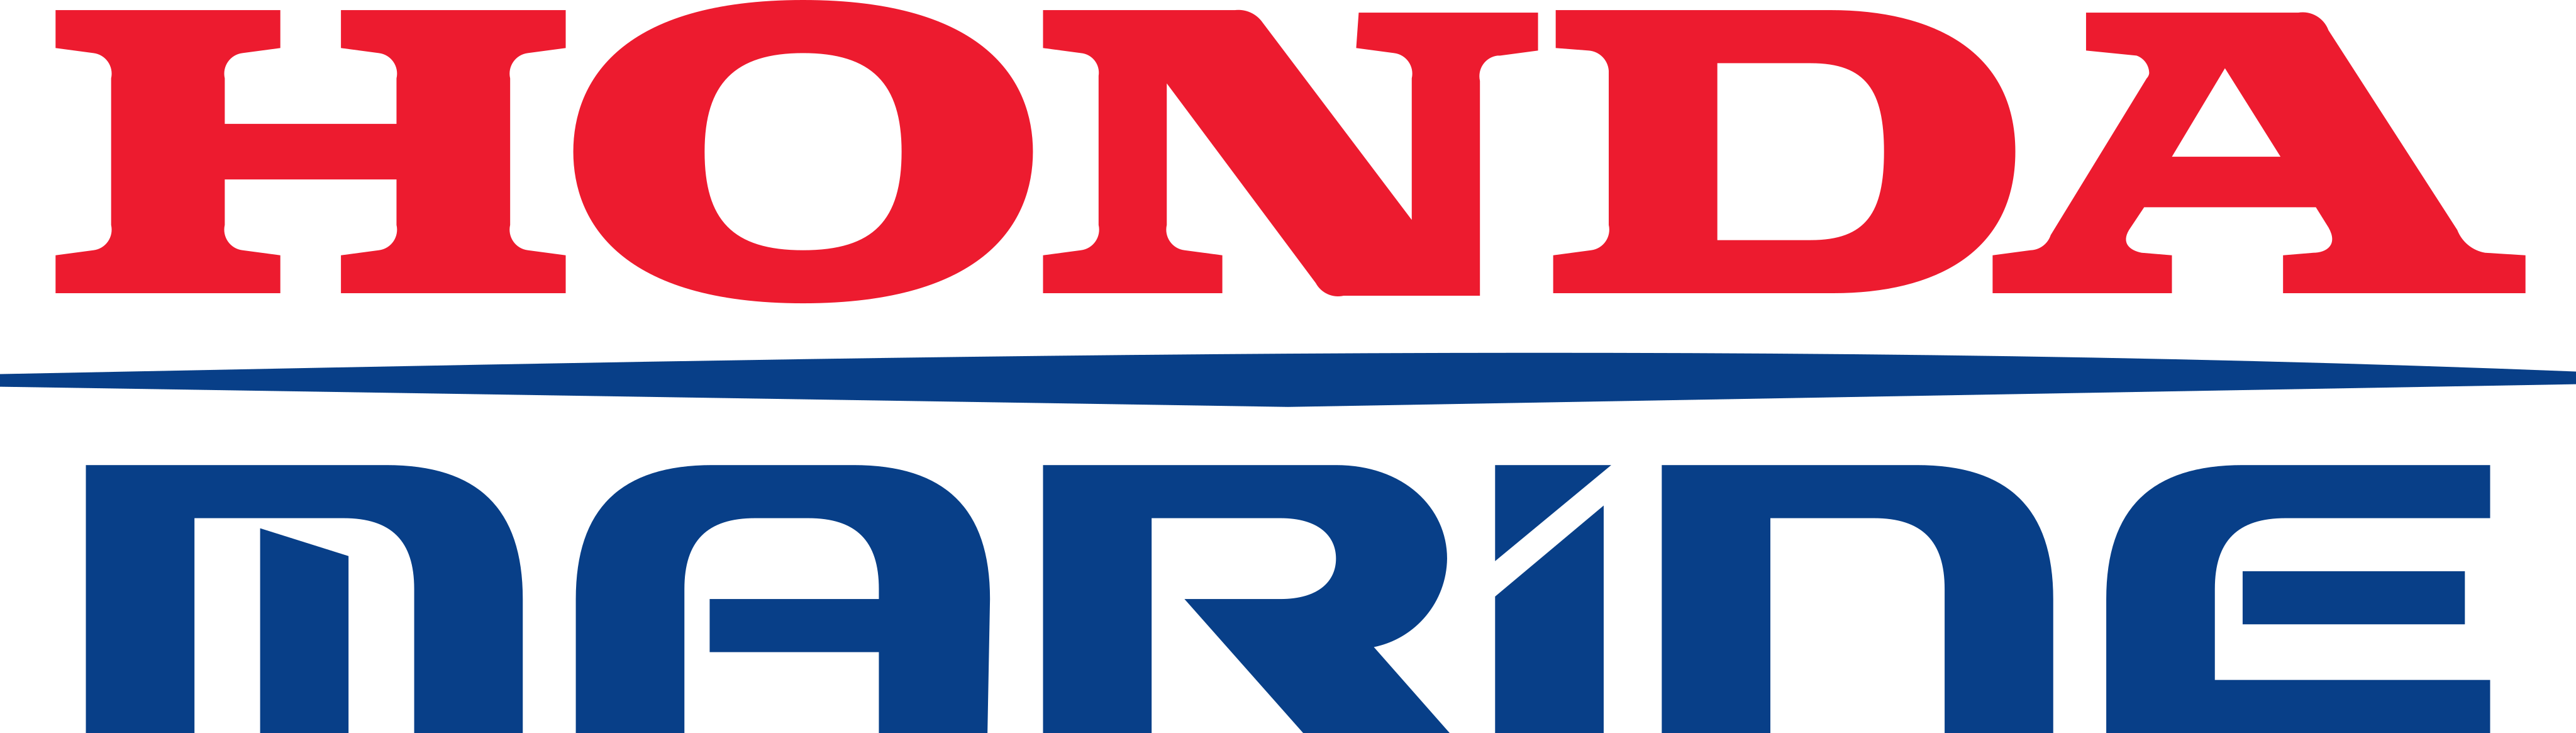 honda marine logo - Honda Marine Logo